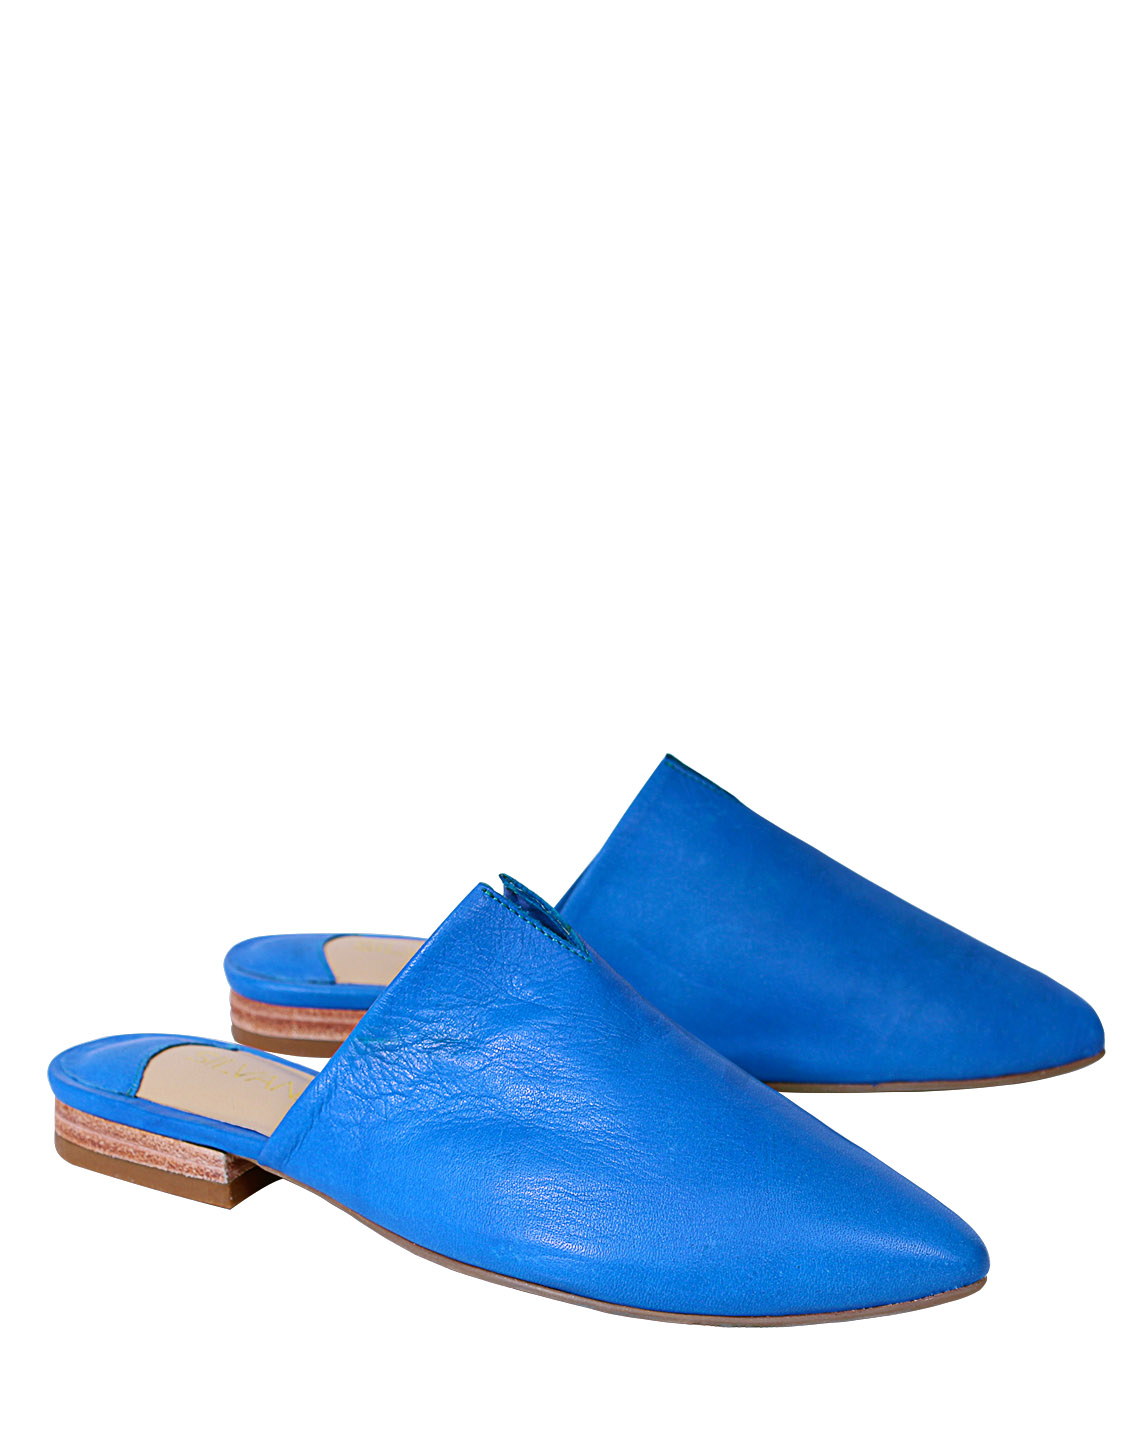 Zapato Zueco FZ-9500 Color Azul